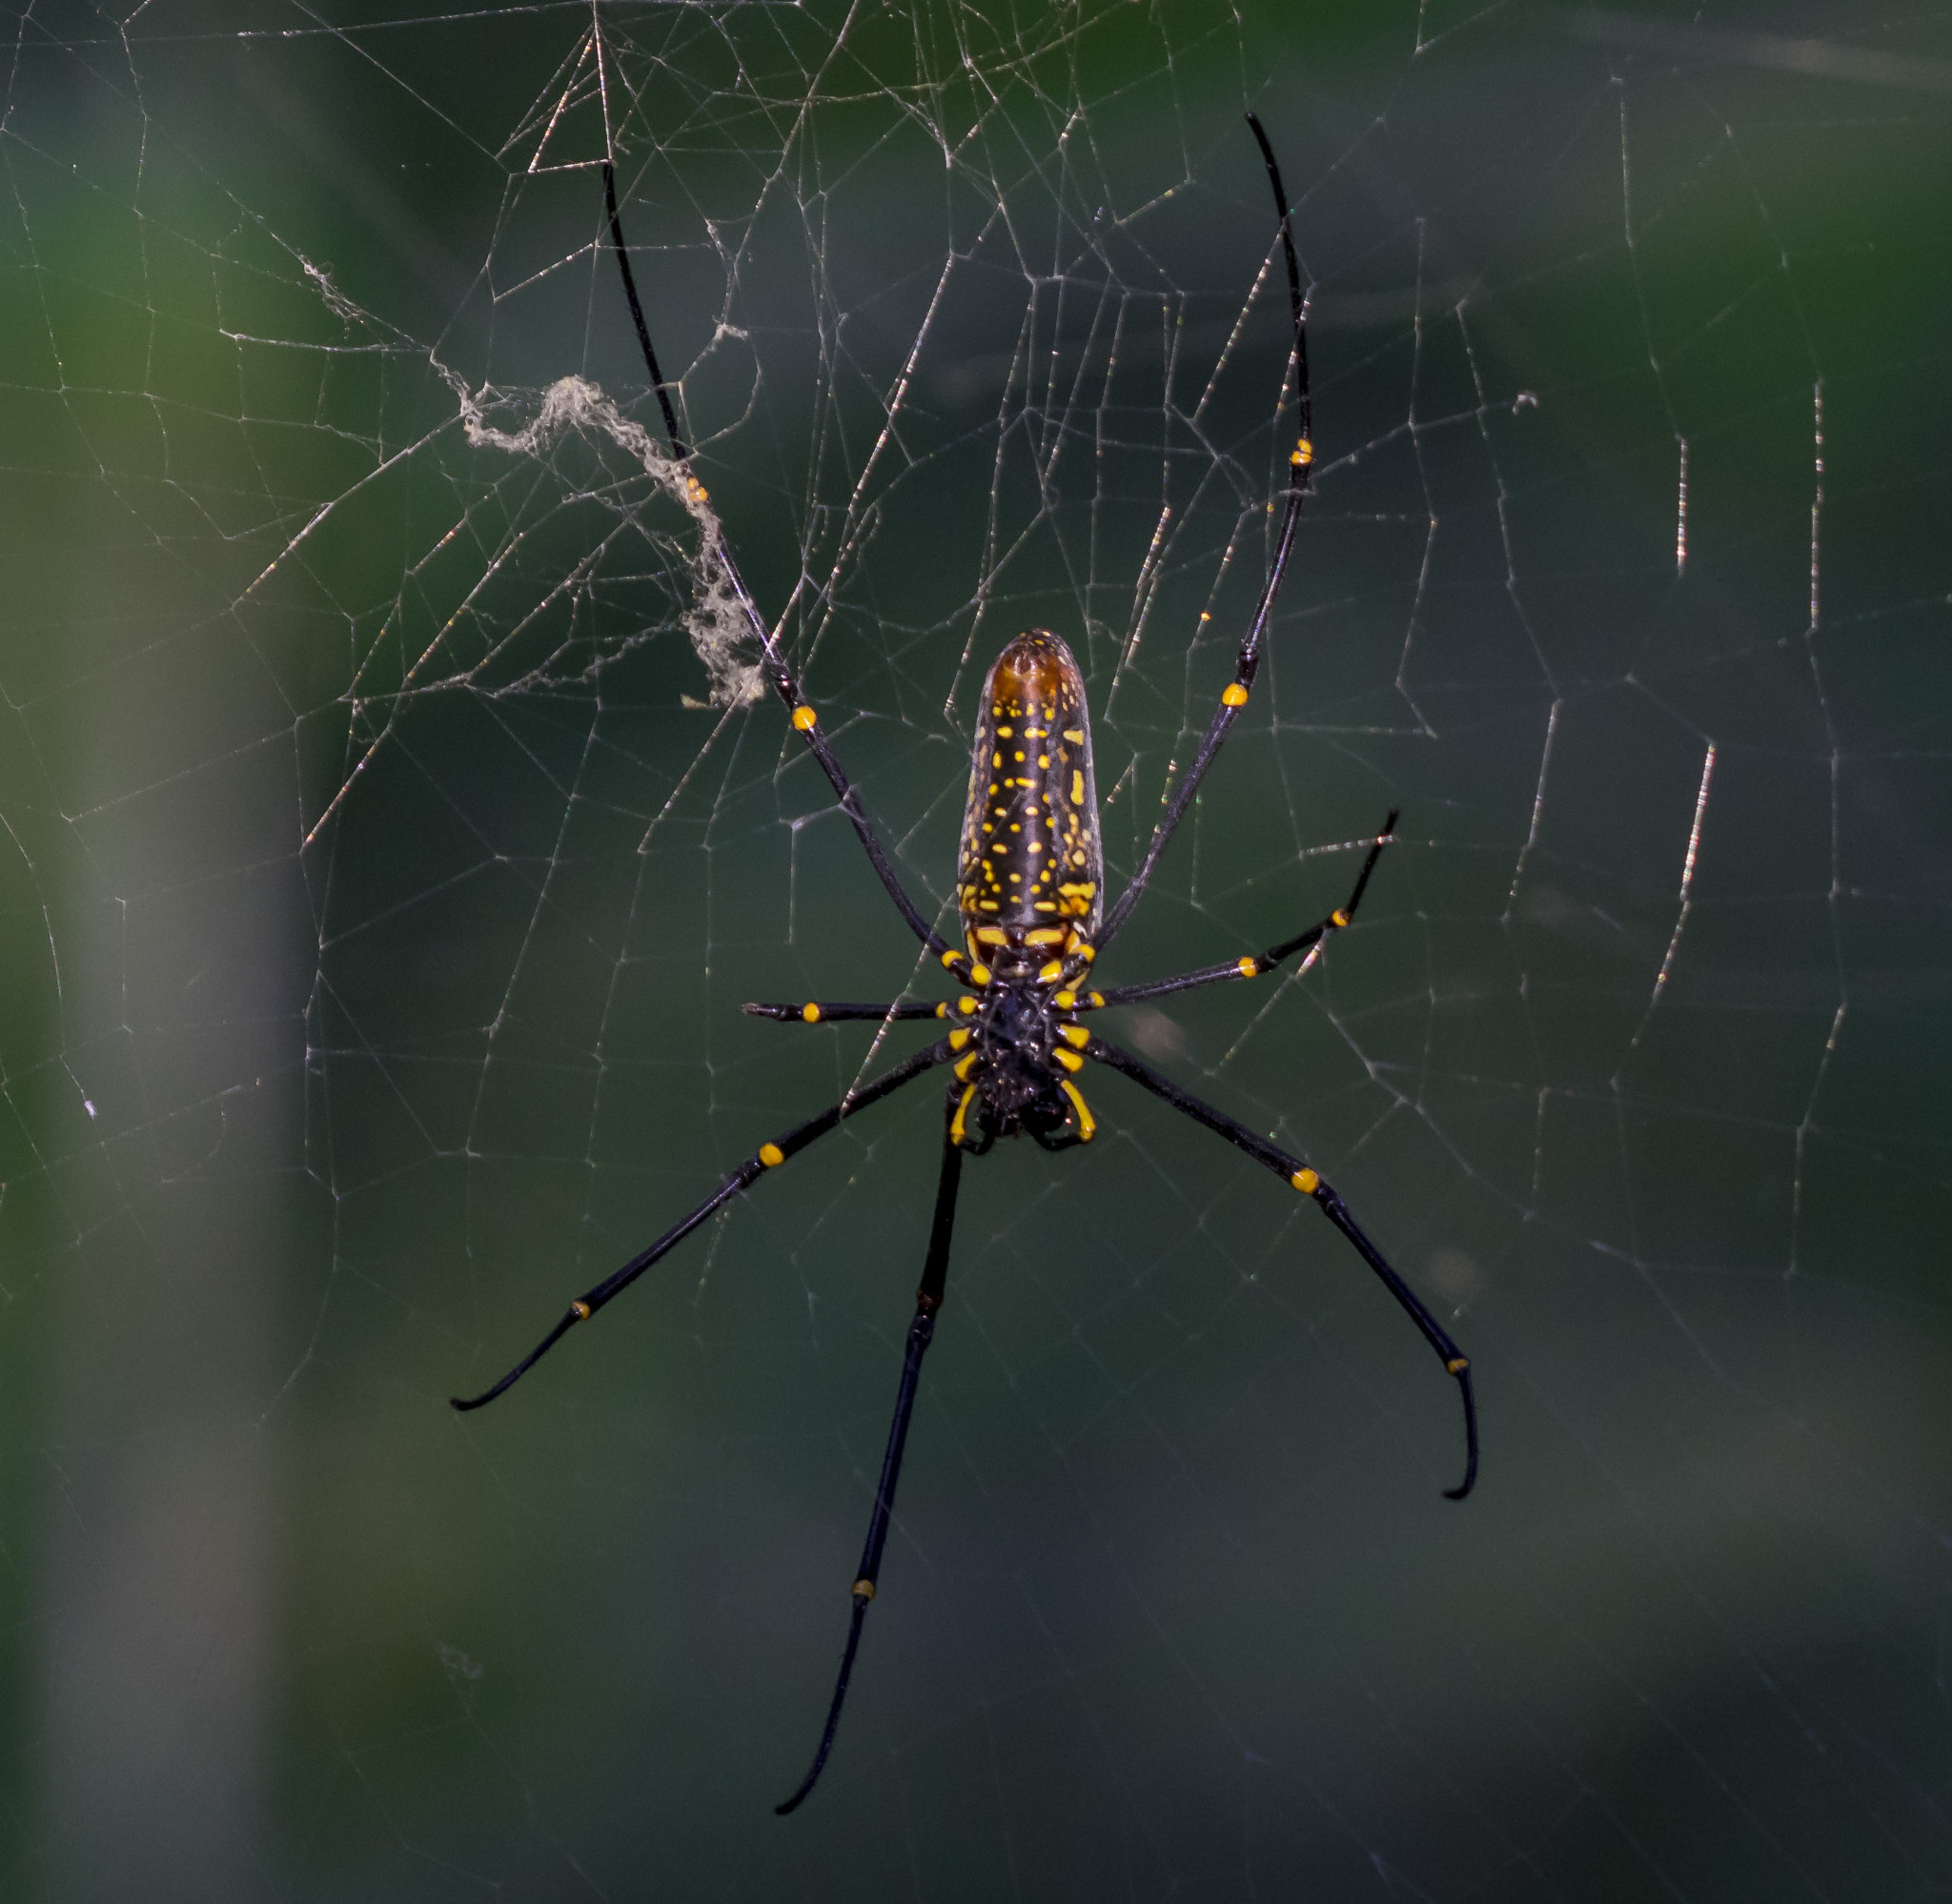 Nikon D5300 sample photo. Himalayan spider photography